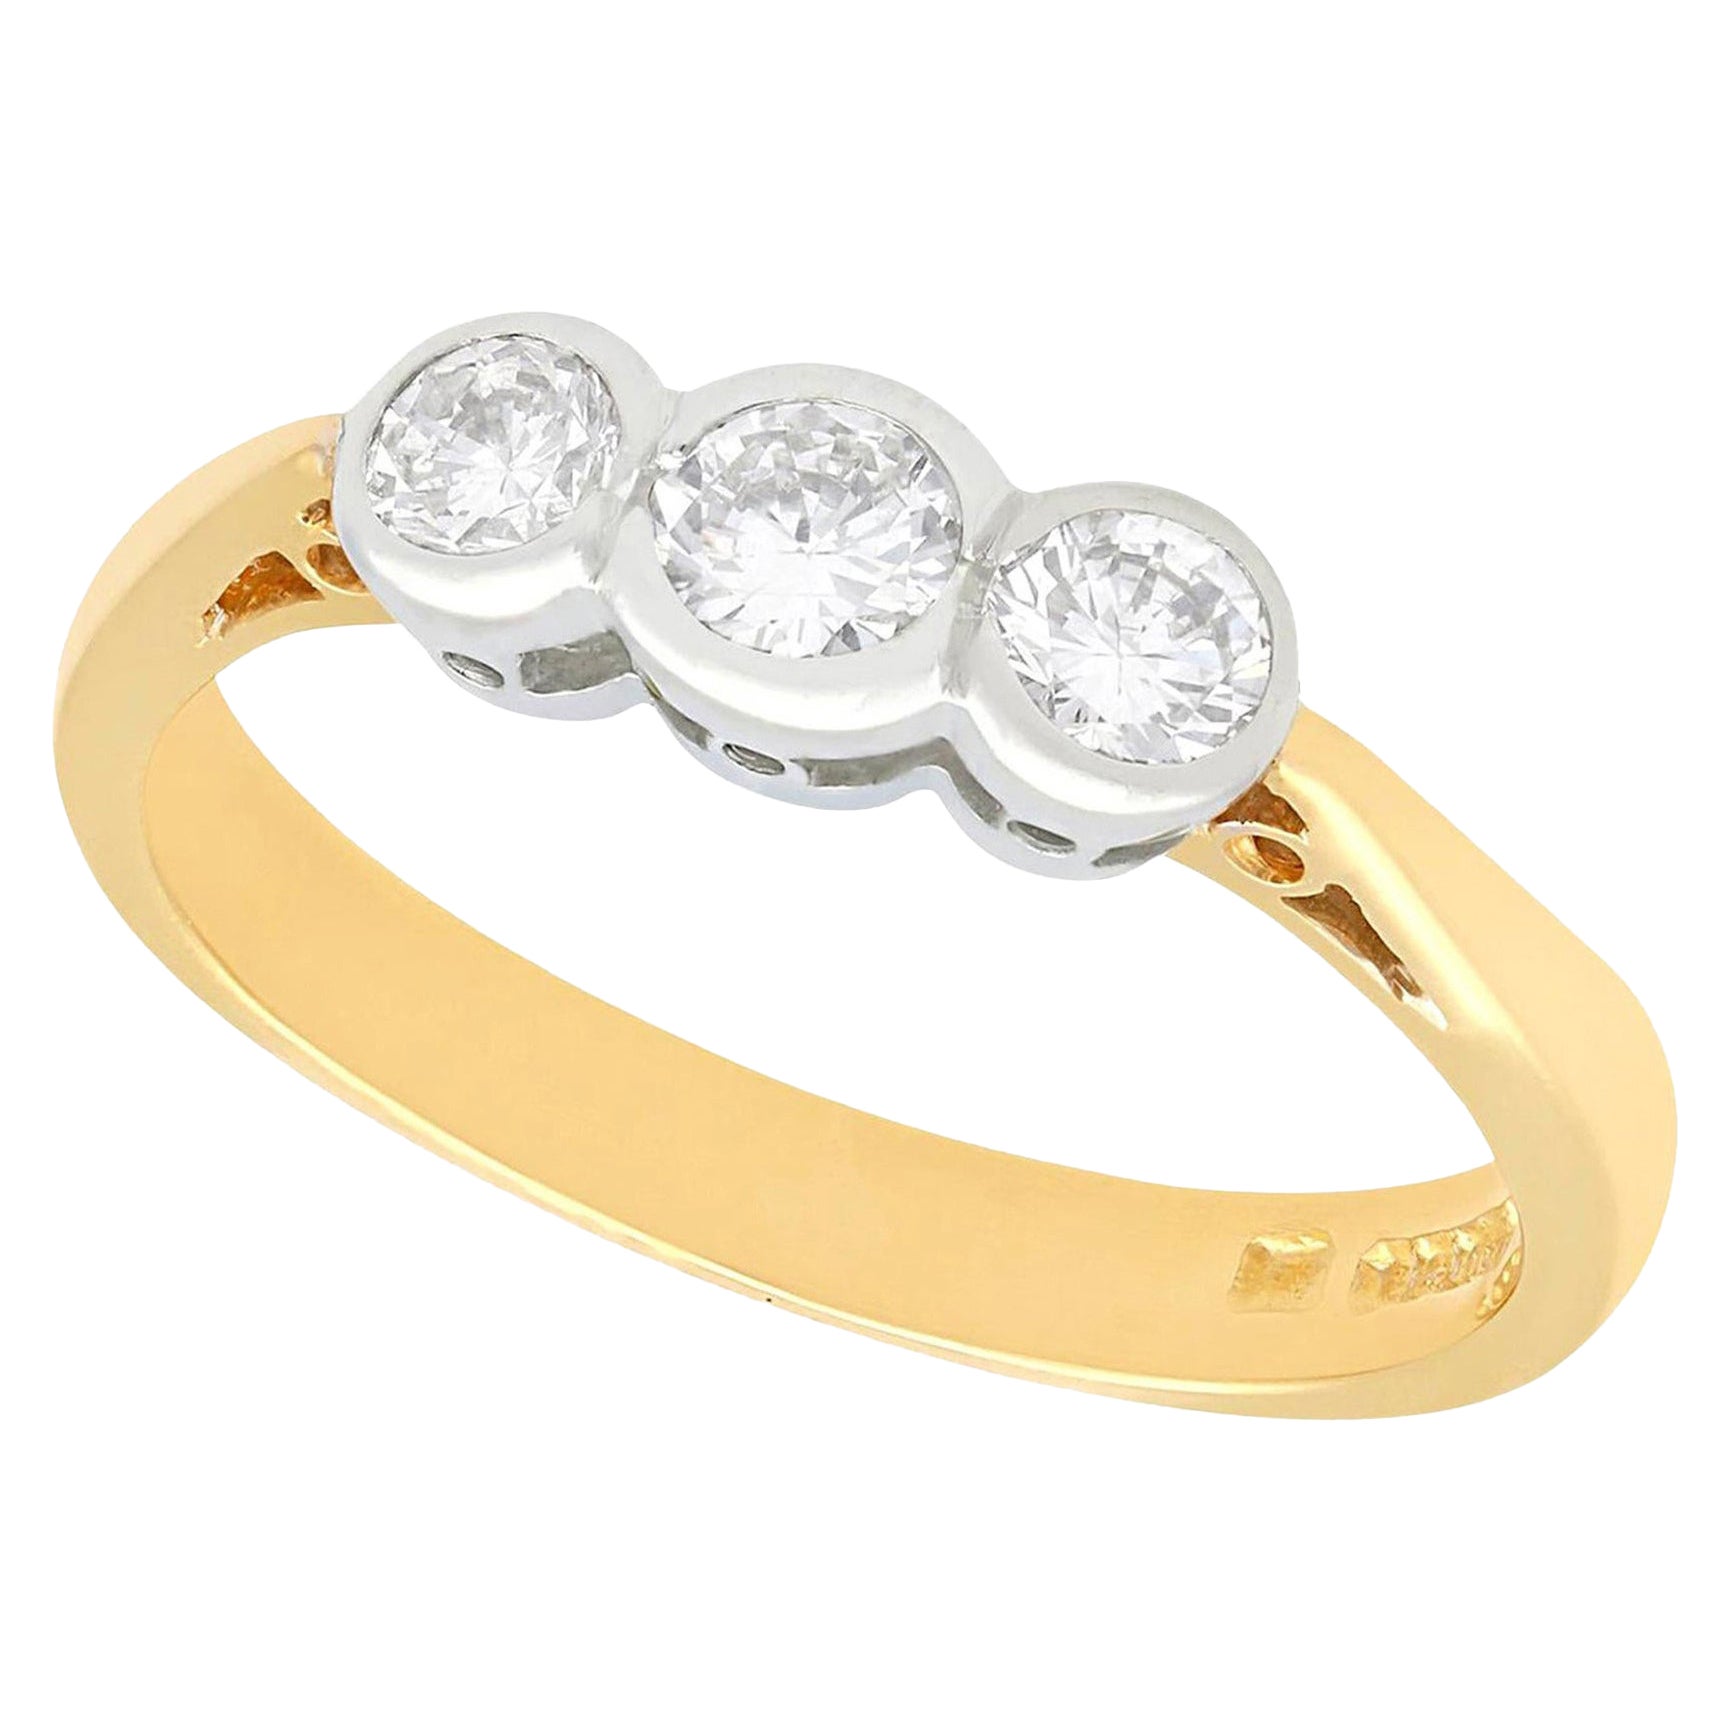 Verlobungsring aus Diamant und 18 Karat Gelbgold mit drei Steinen